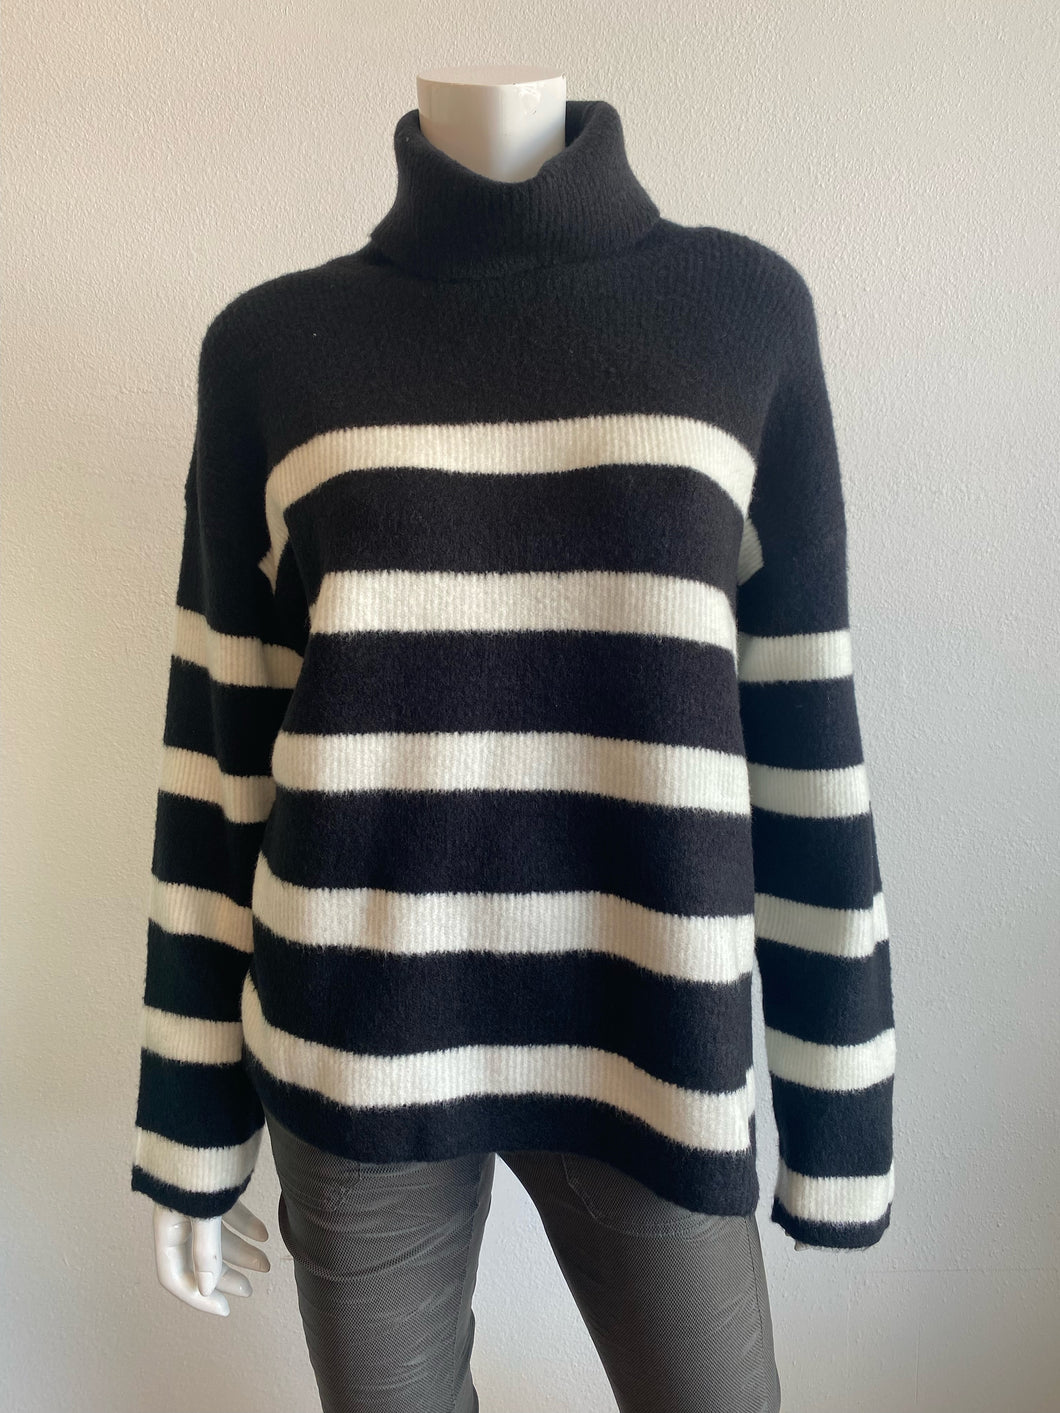 Velvet - Encino Stripe Sweater - Black/White